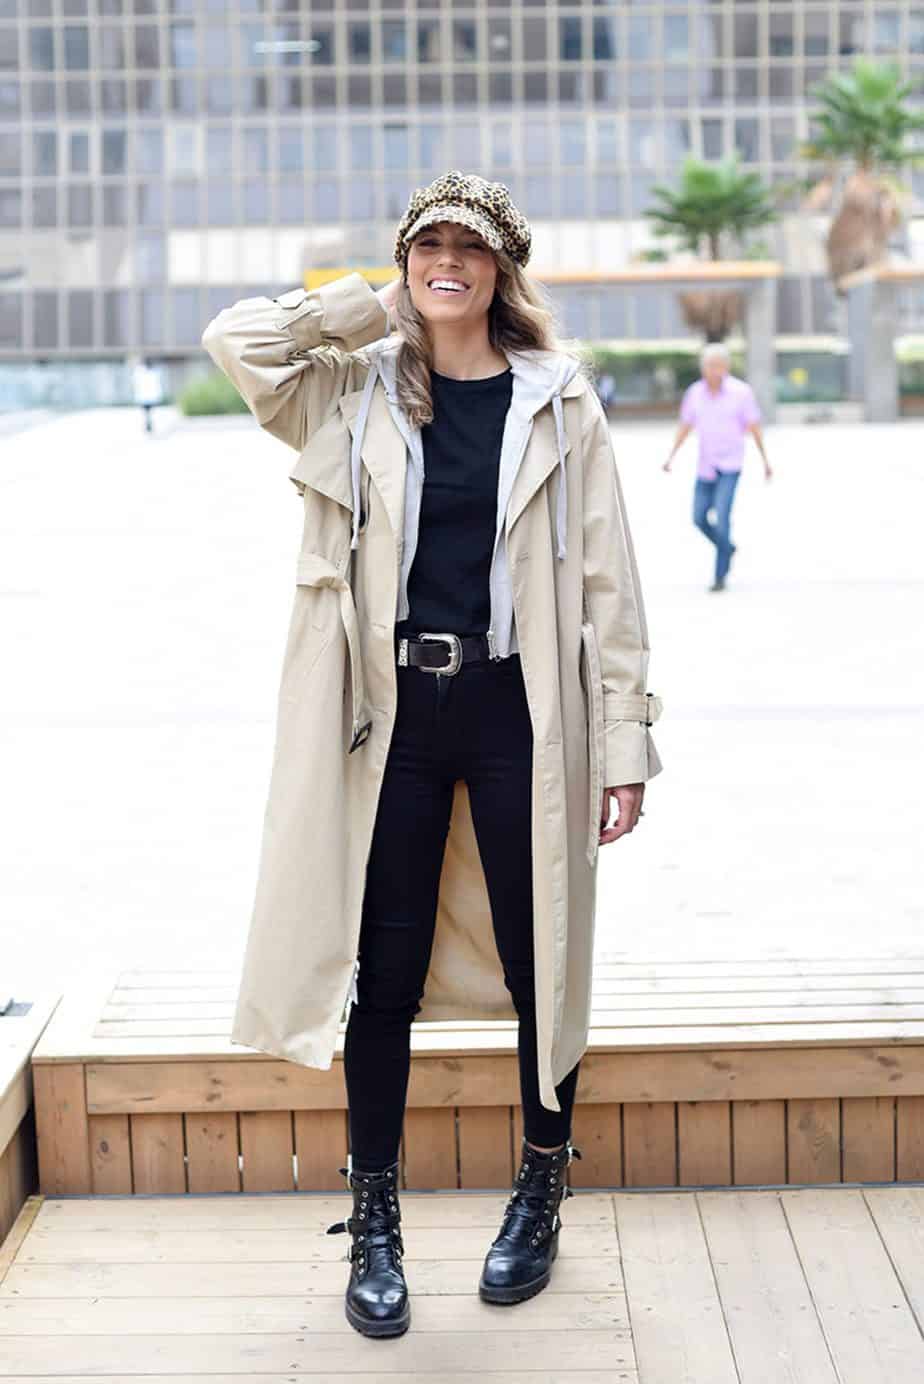 מעיל: מנגו קפוצ'ון: פוקס כובע: אוסף פרטי, חגורה: עדיקה - Fashion Israel - מגזין אופנה